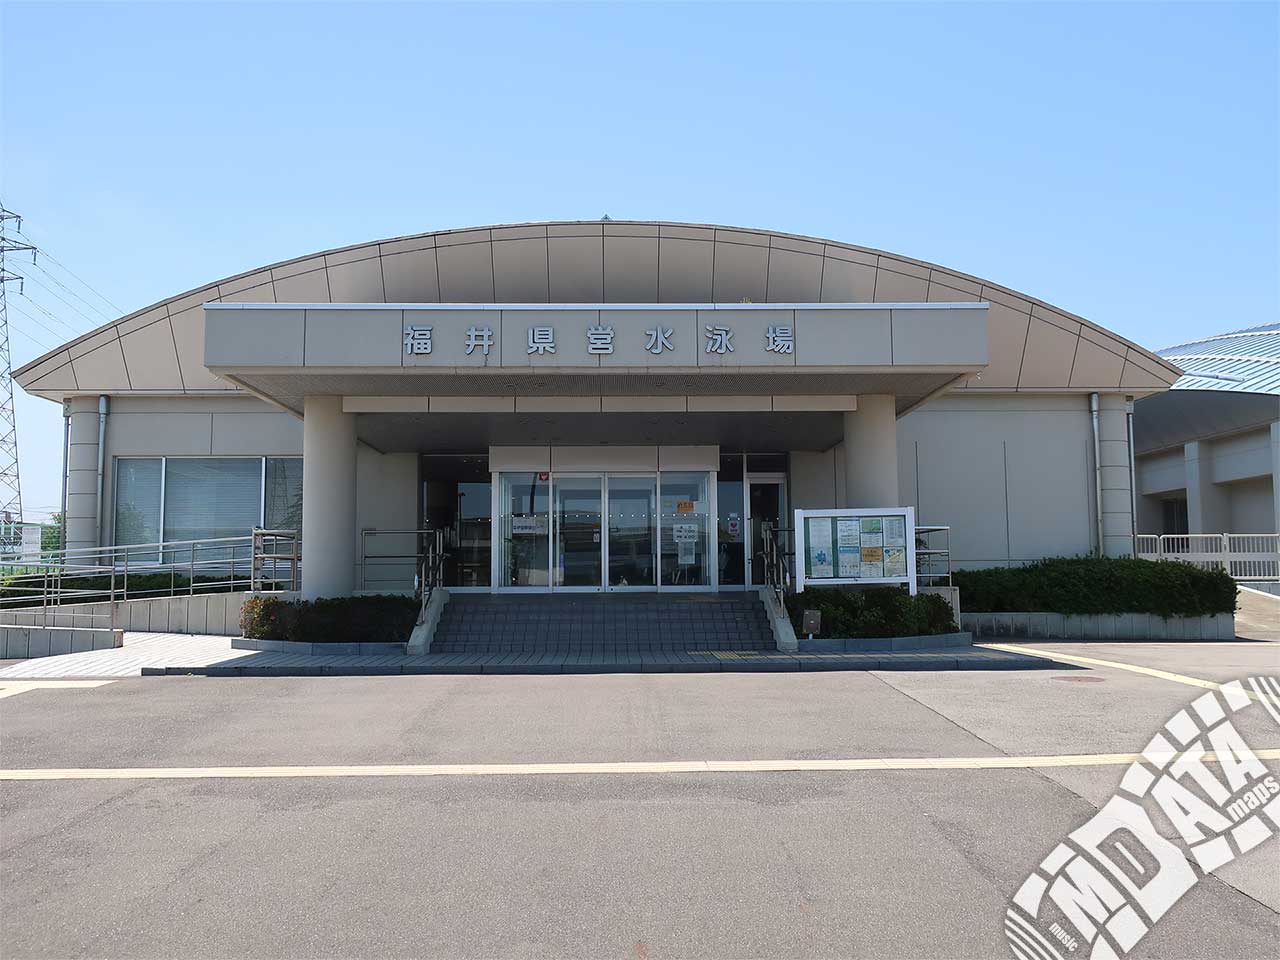 福井県営水泳場の写真 Photo taken on 2022/05/18